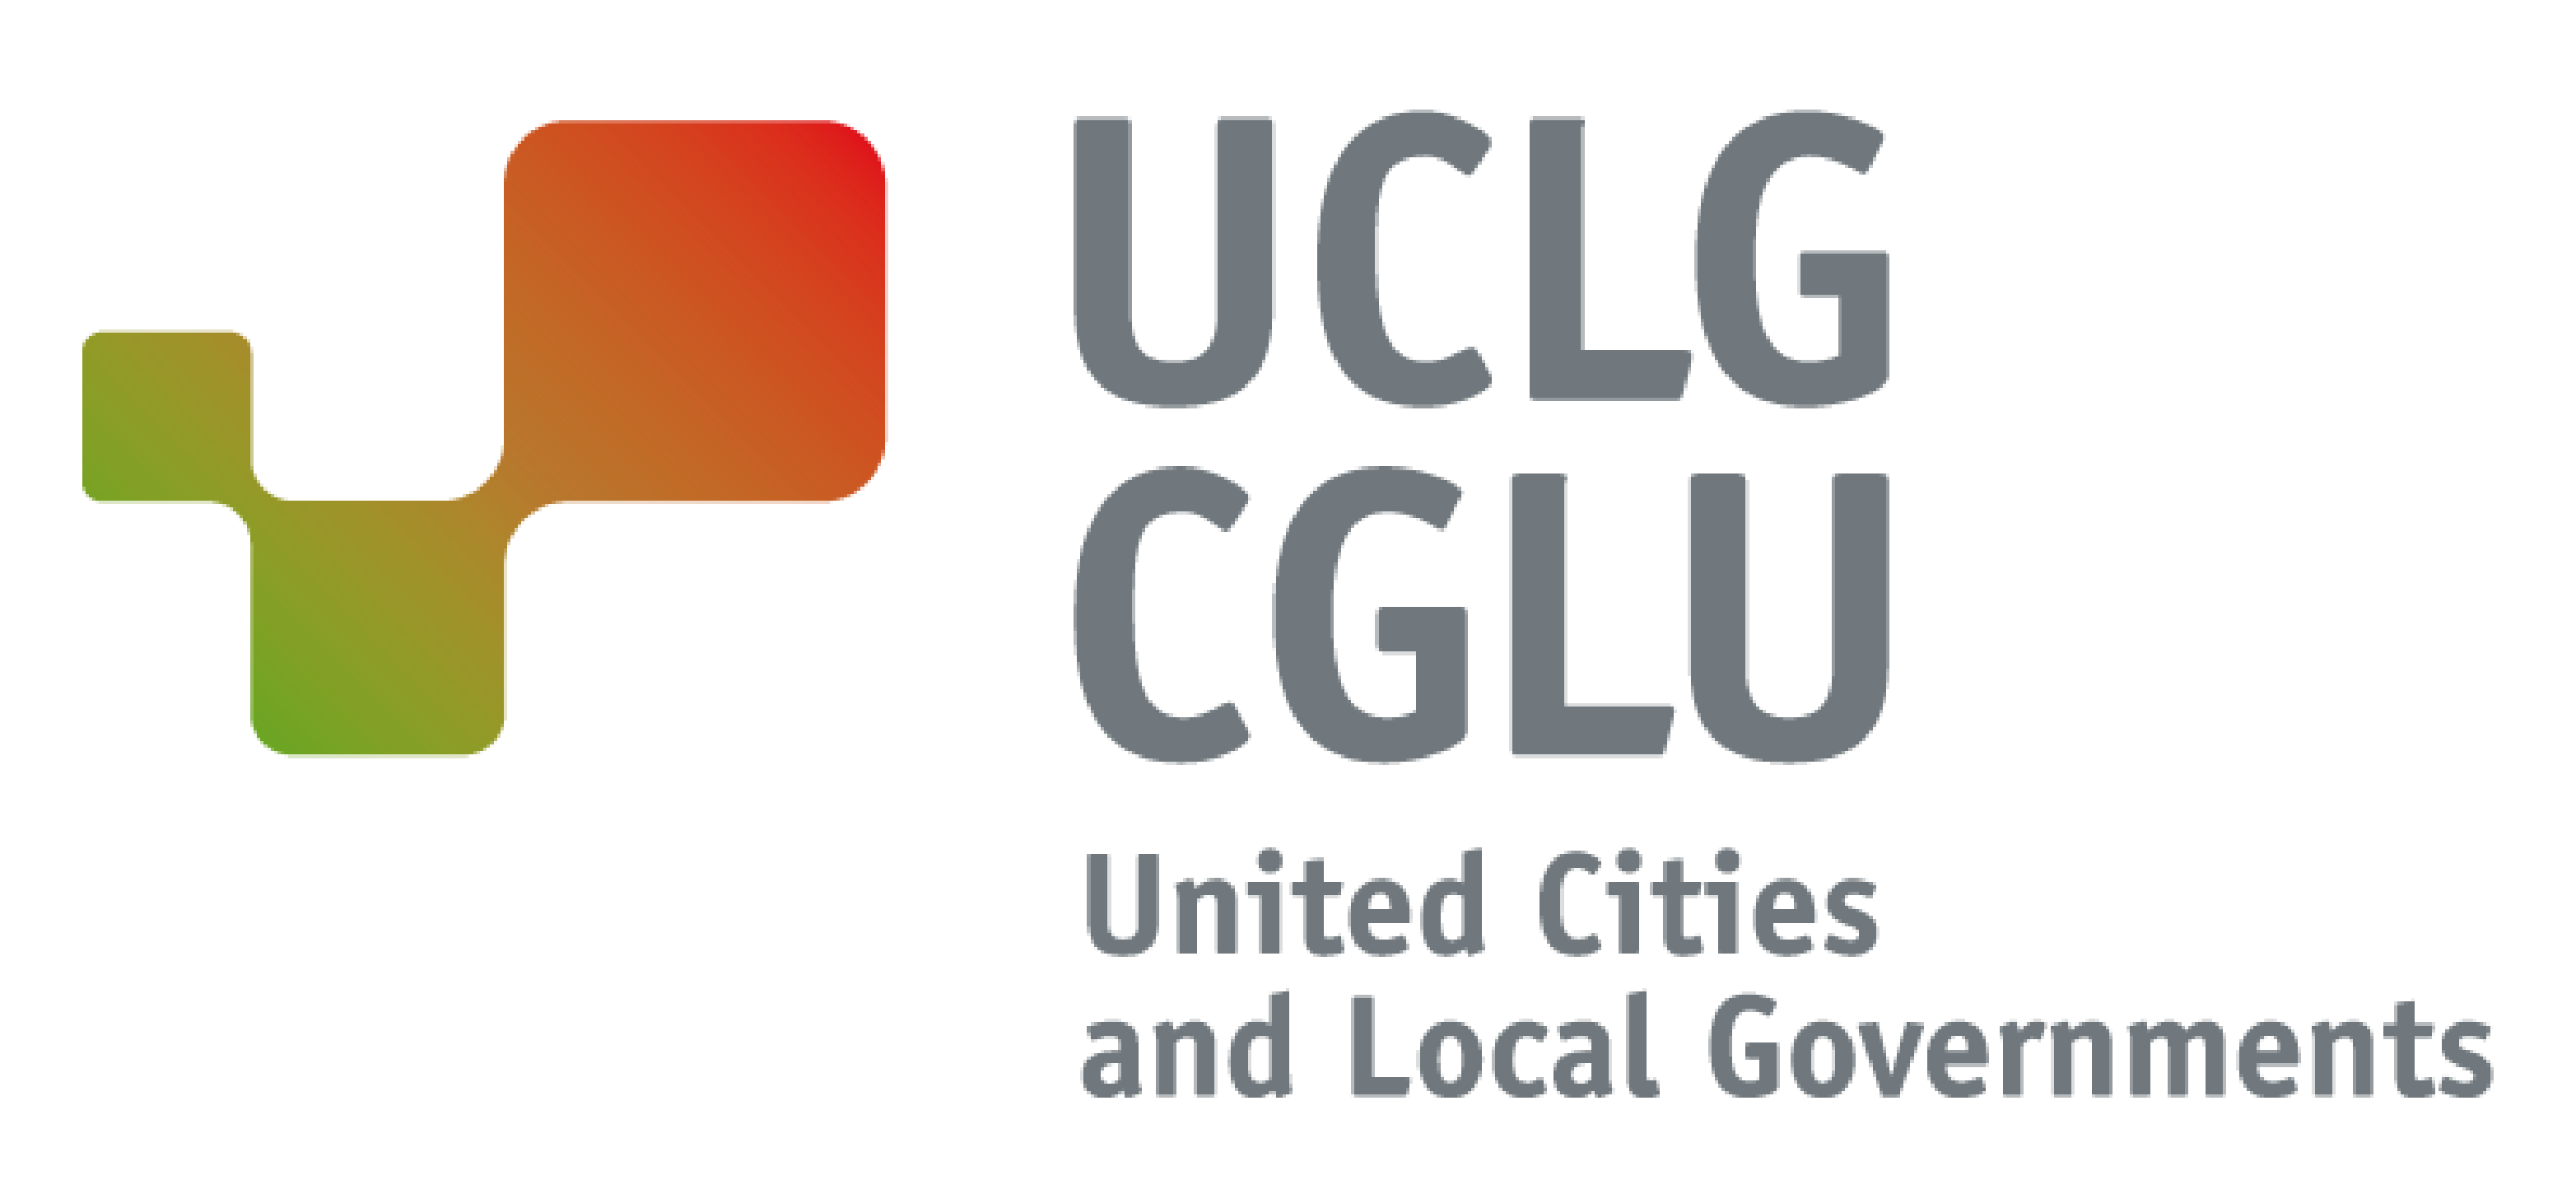 Cités et gouvernements locaux unis